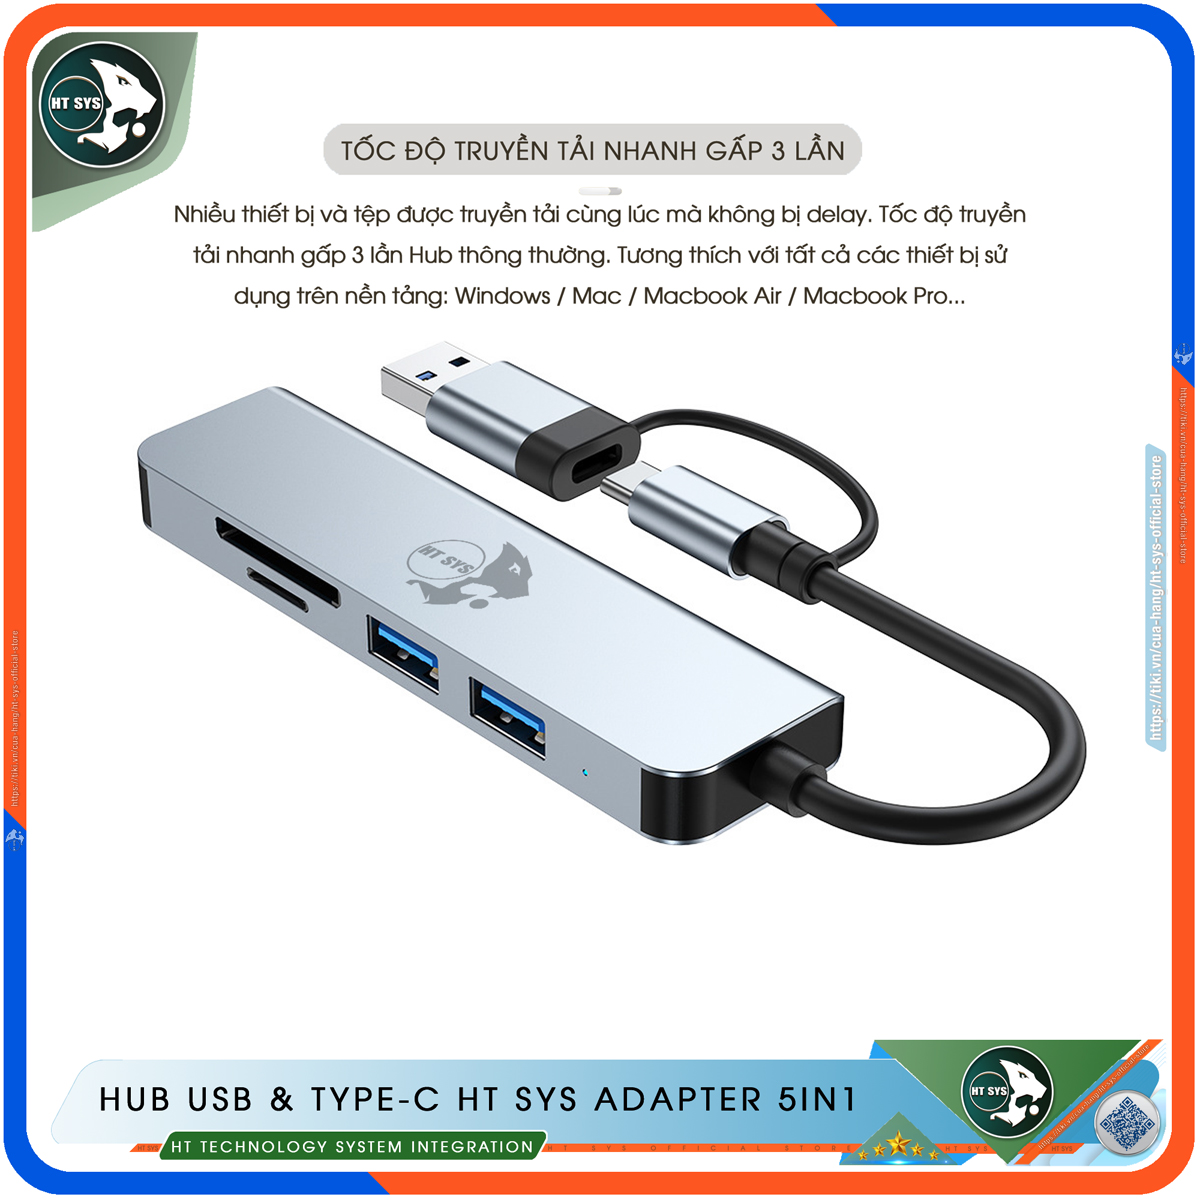 Hub USB 3.0 Và Hub Type C HT SYS Adapter 5in1 - Cổng Chia USB Mở Rộng Kết Nối Tốc Độ Cao Dành Cho Macbook, Laptop, PC - Hub Chuyển Đổi USB Type-C Hỗ Trợ Sạc Pin, Kết Nối Đa Năng ổ Cứng, Bàn Phím, Chuột, Máy In, Ổ Chia USB - Hàng Chính Hãng